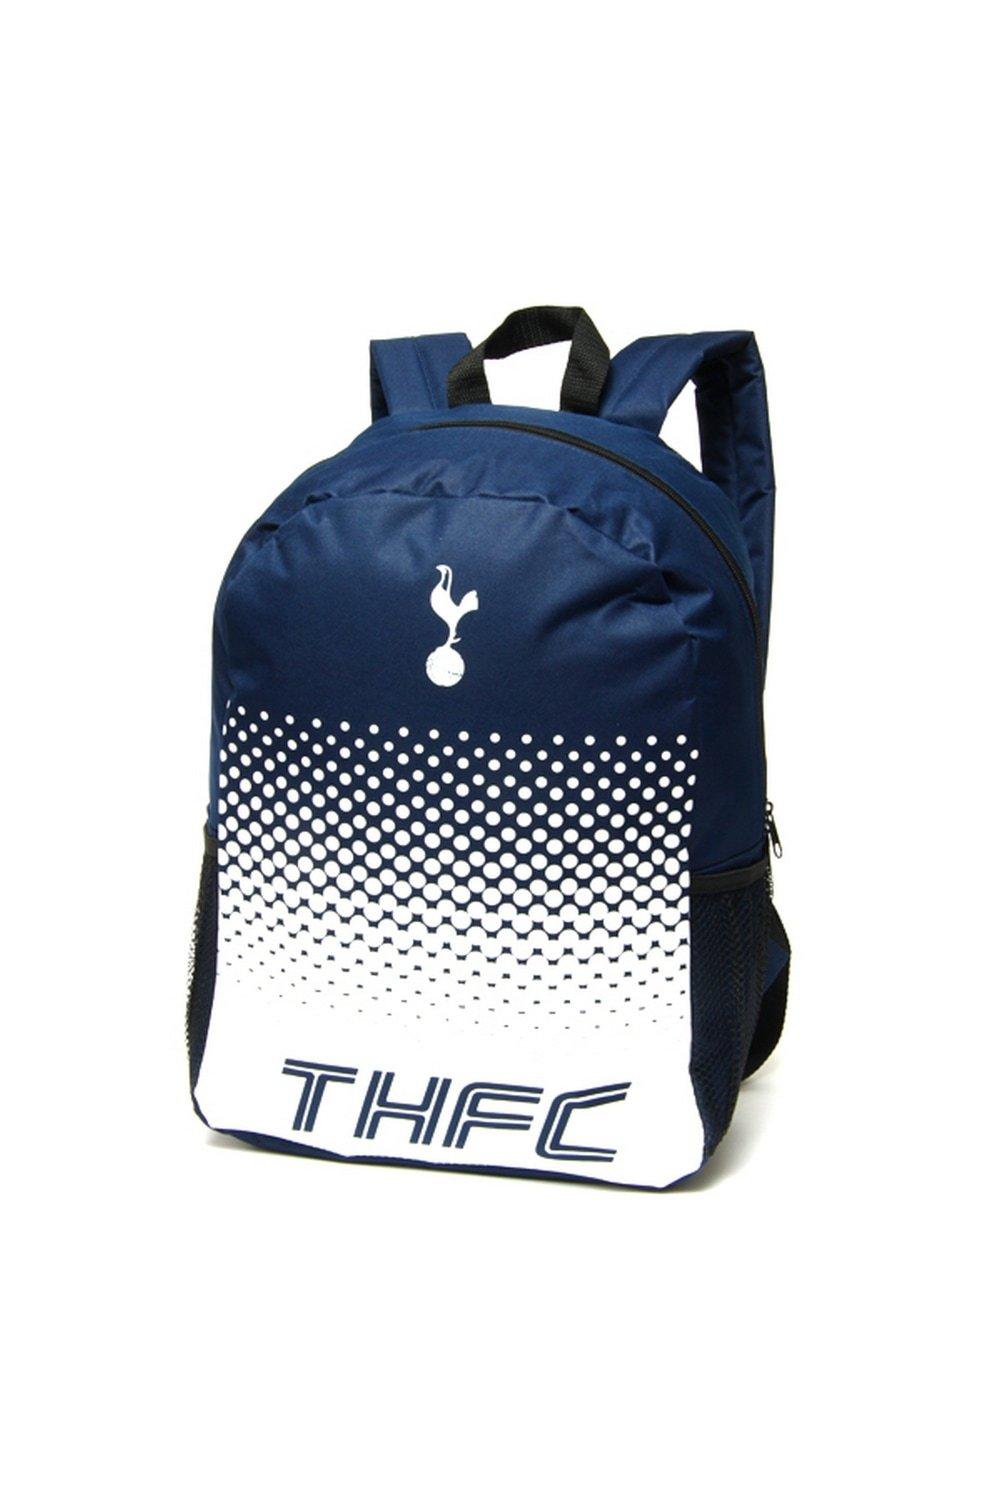 Официальный рюкзак Fade Football Crest Tottenham Hotspur FC, темно-синий флэш рюкзак tottenham hotspur fc темно синий